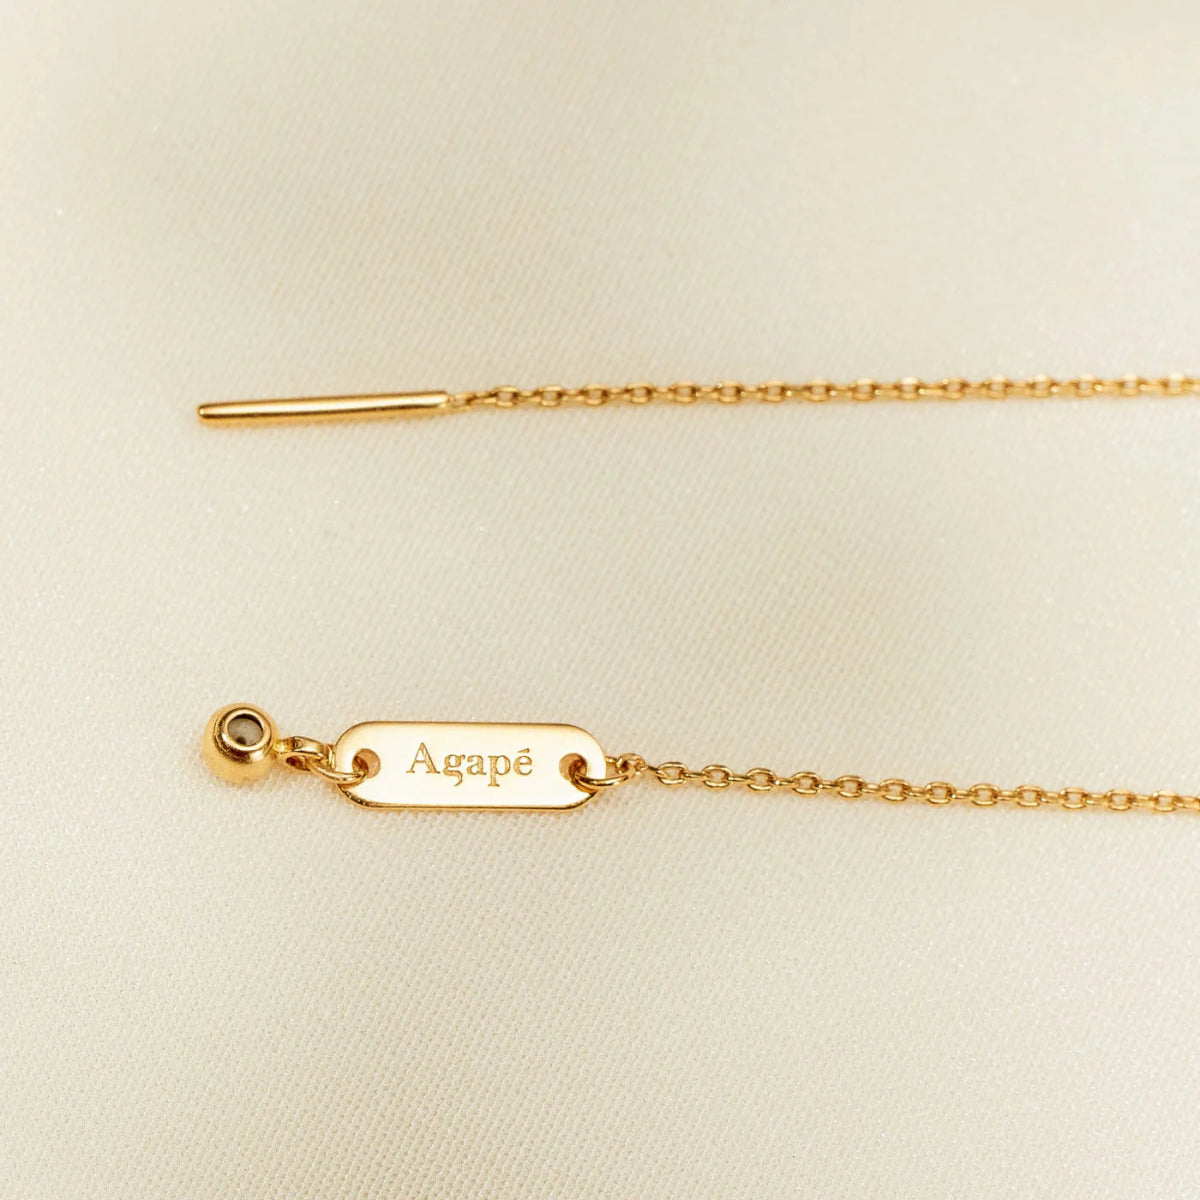 Vergoldete Sammel-Halskette mit einem Charm - Ankerherz Verlag